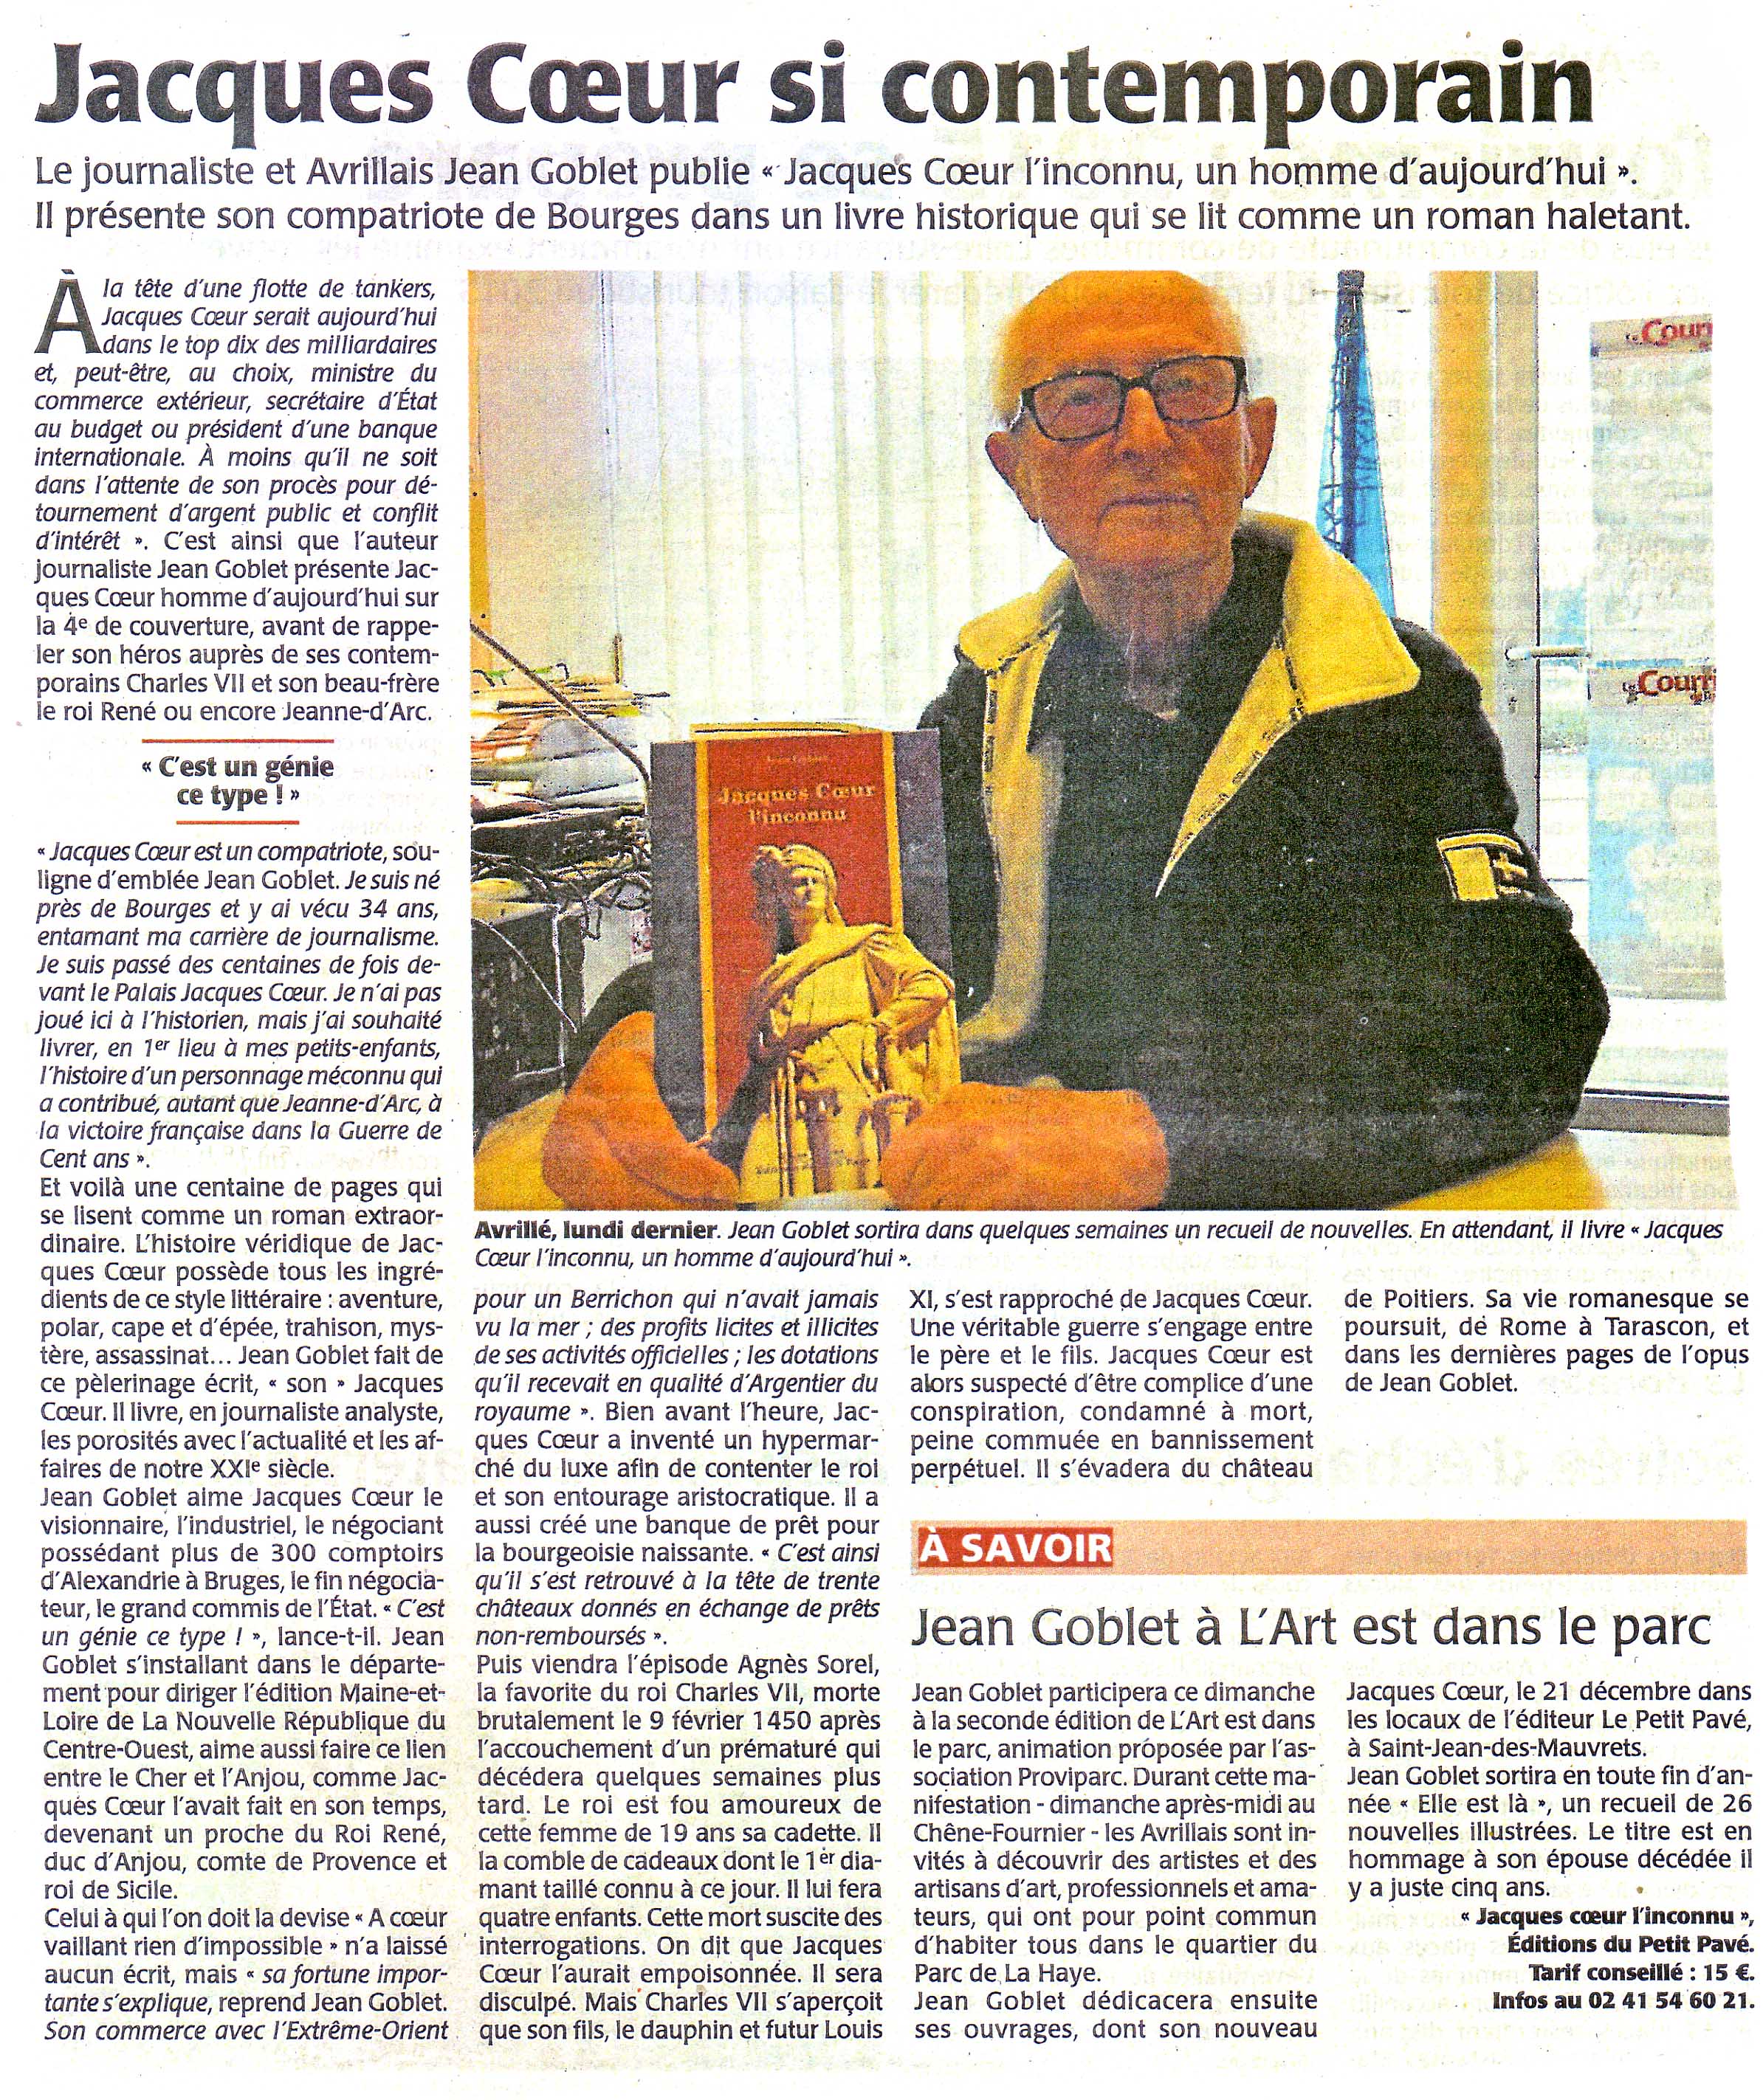 Jean Goblet nous pr�sente Jacques Coeur - Photo article_goblet_jc.jpg